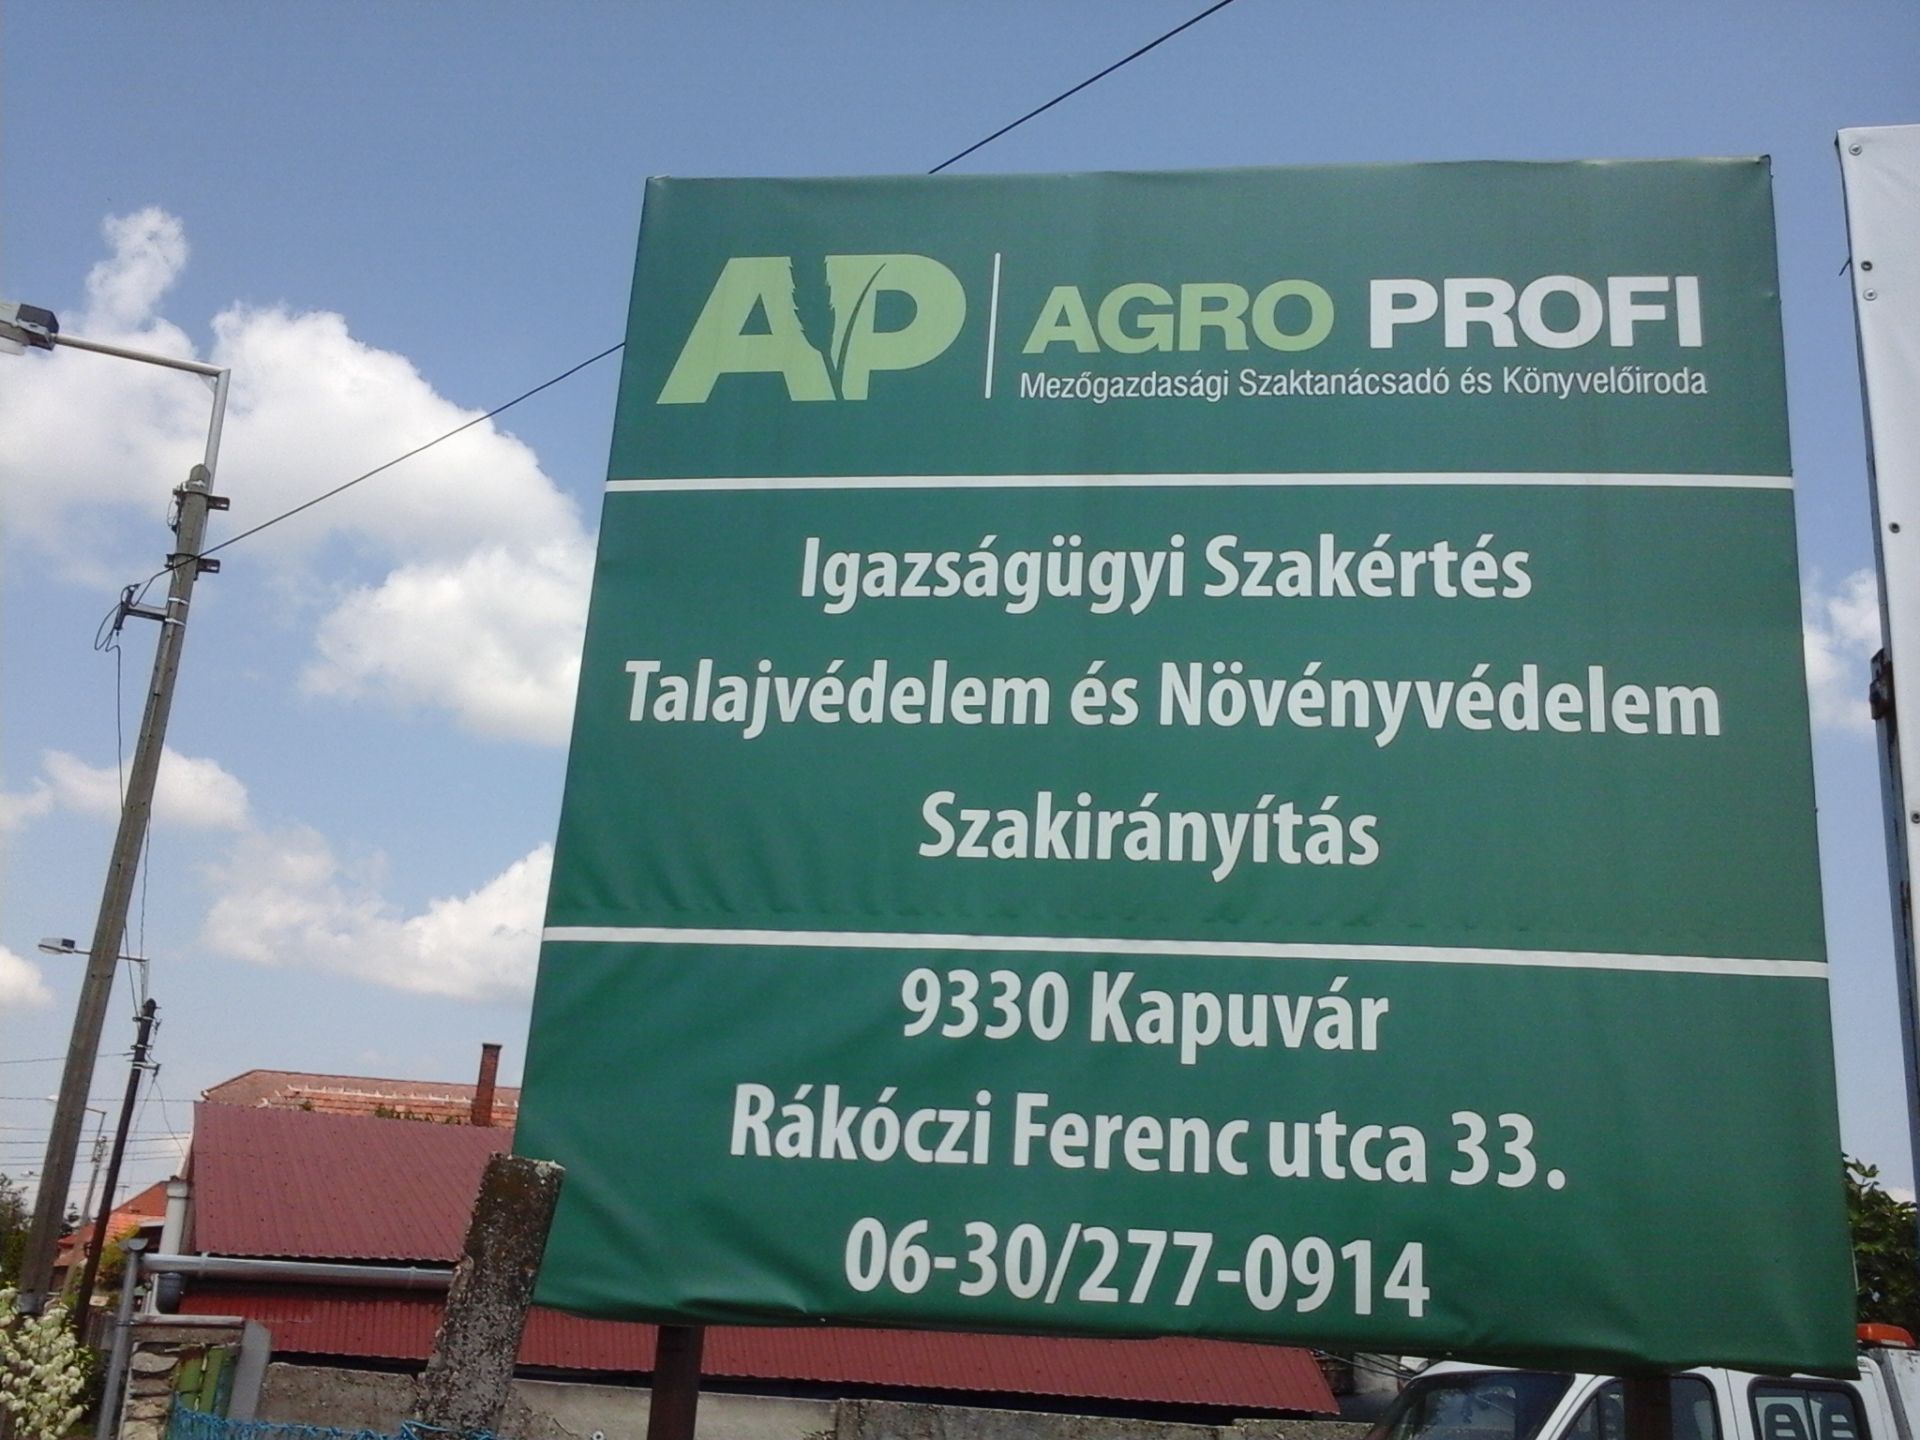 Images AP AGRO PROFI  Dr. Kovács Tamás mezőgazdasági szaktanácsadó, szakértő